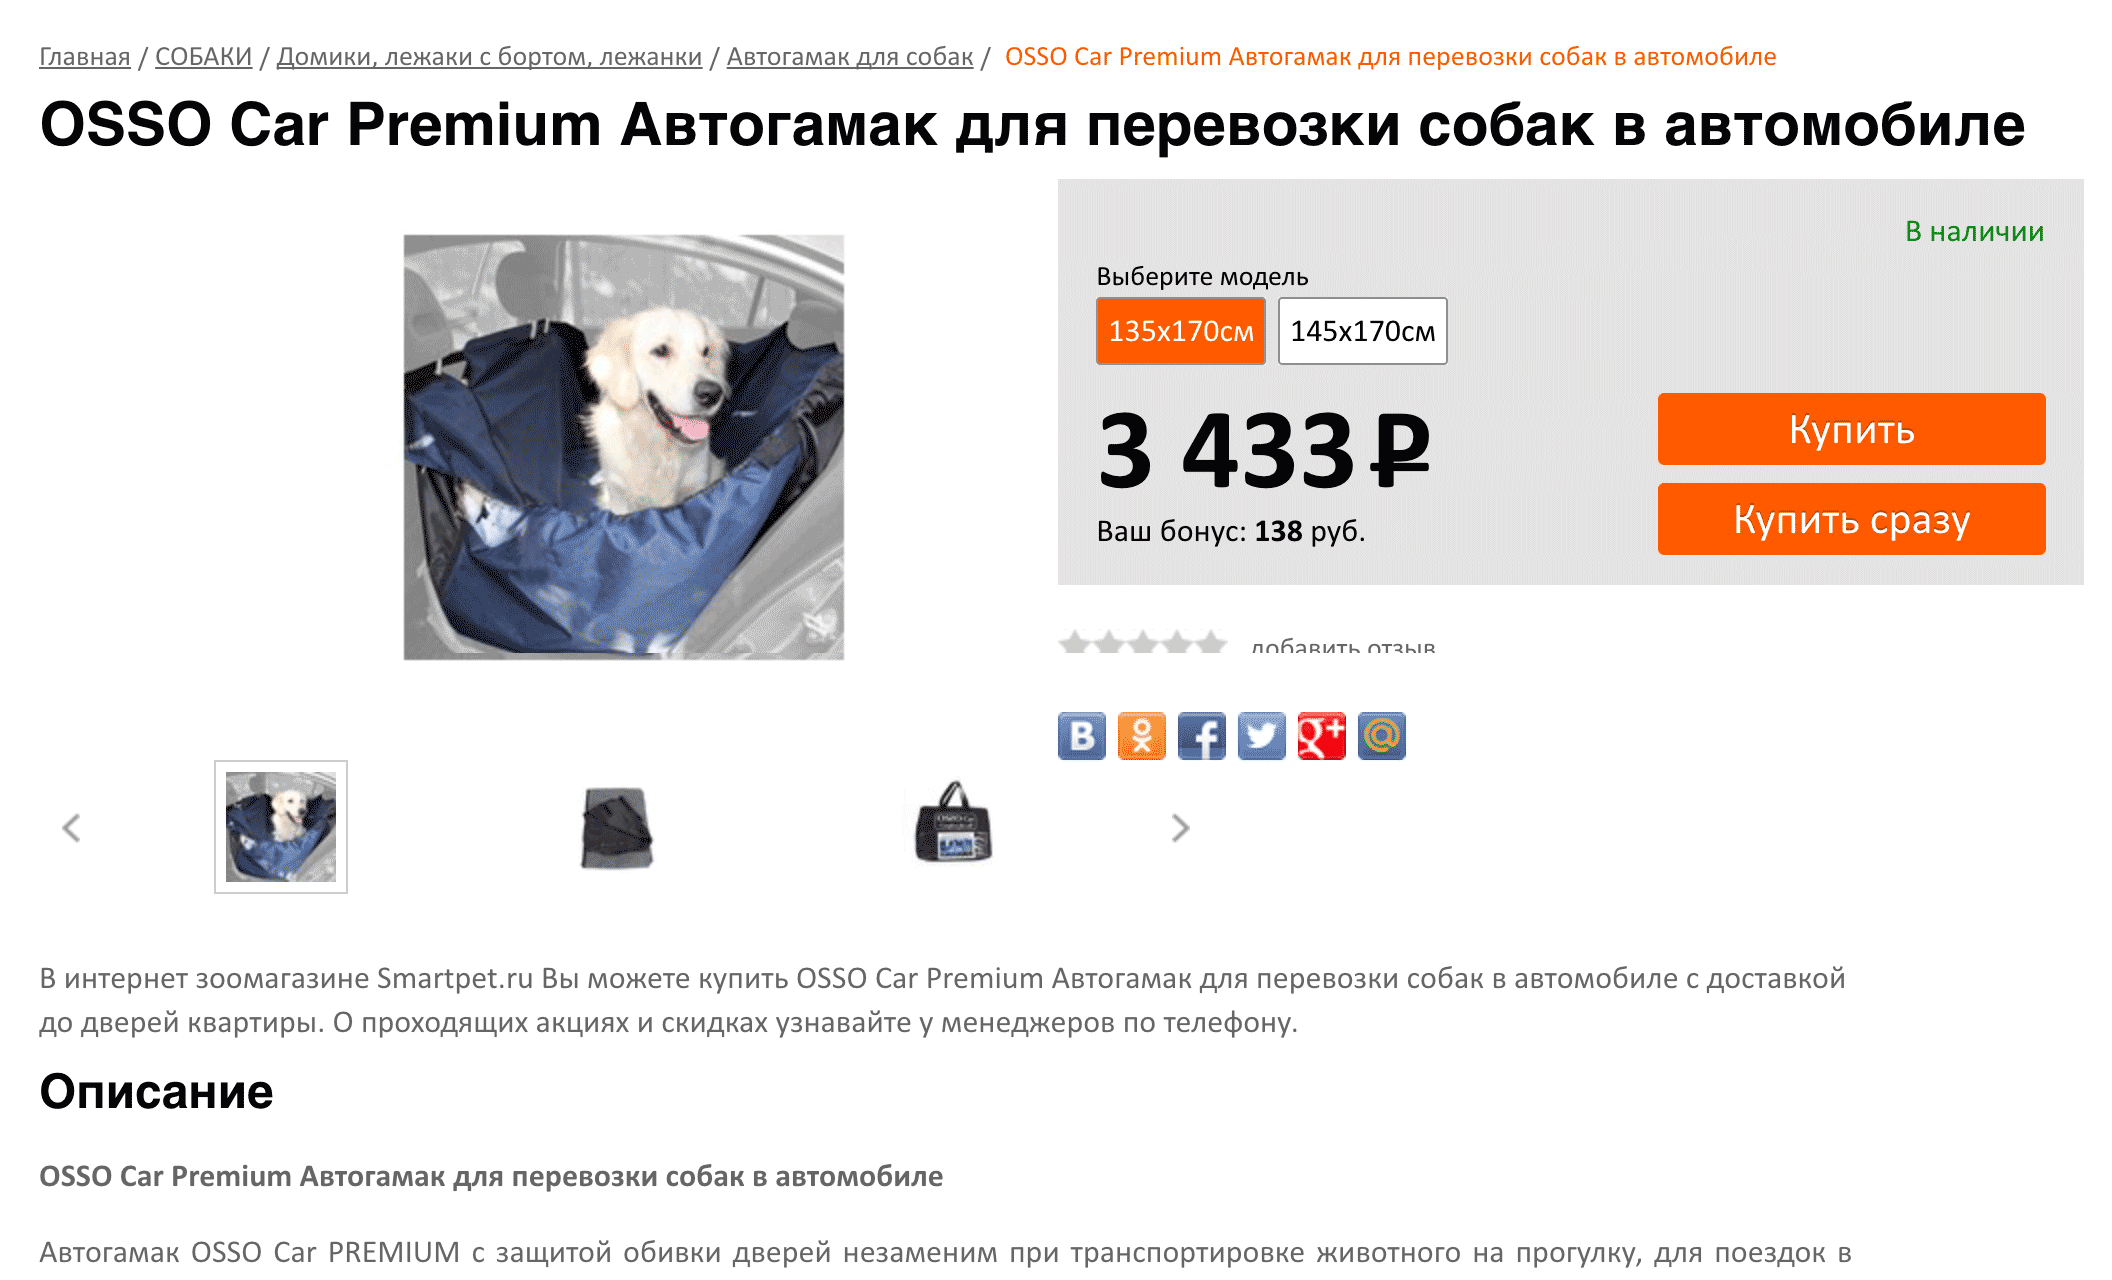 Автогамак в московском зоомагазине продают за 3433 ₽